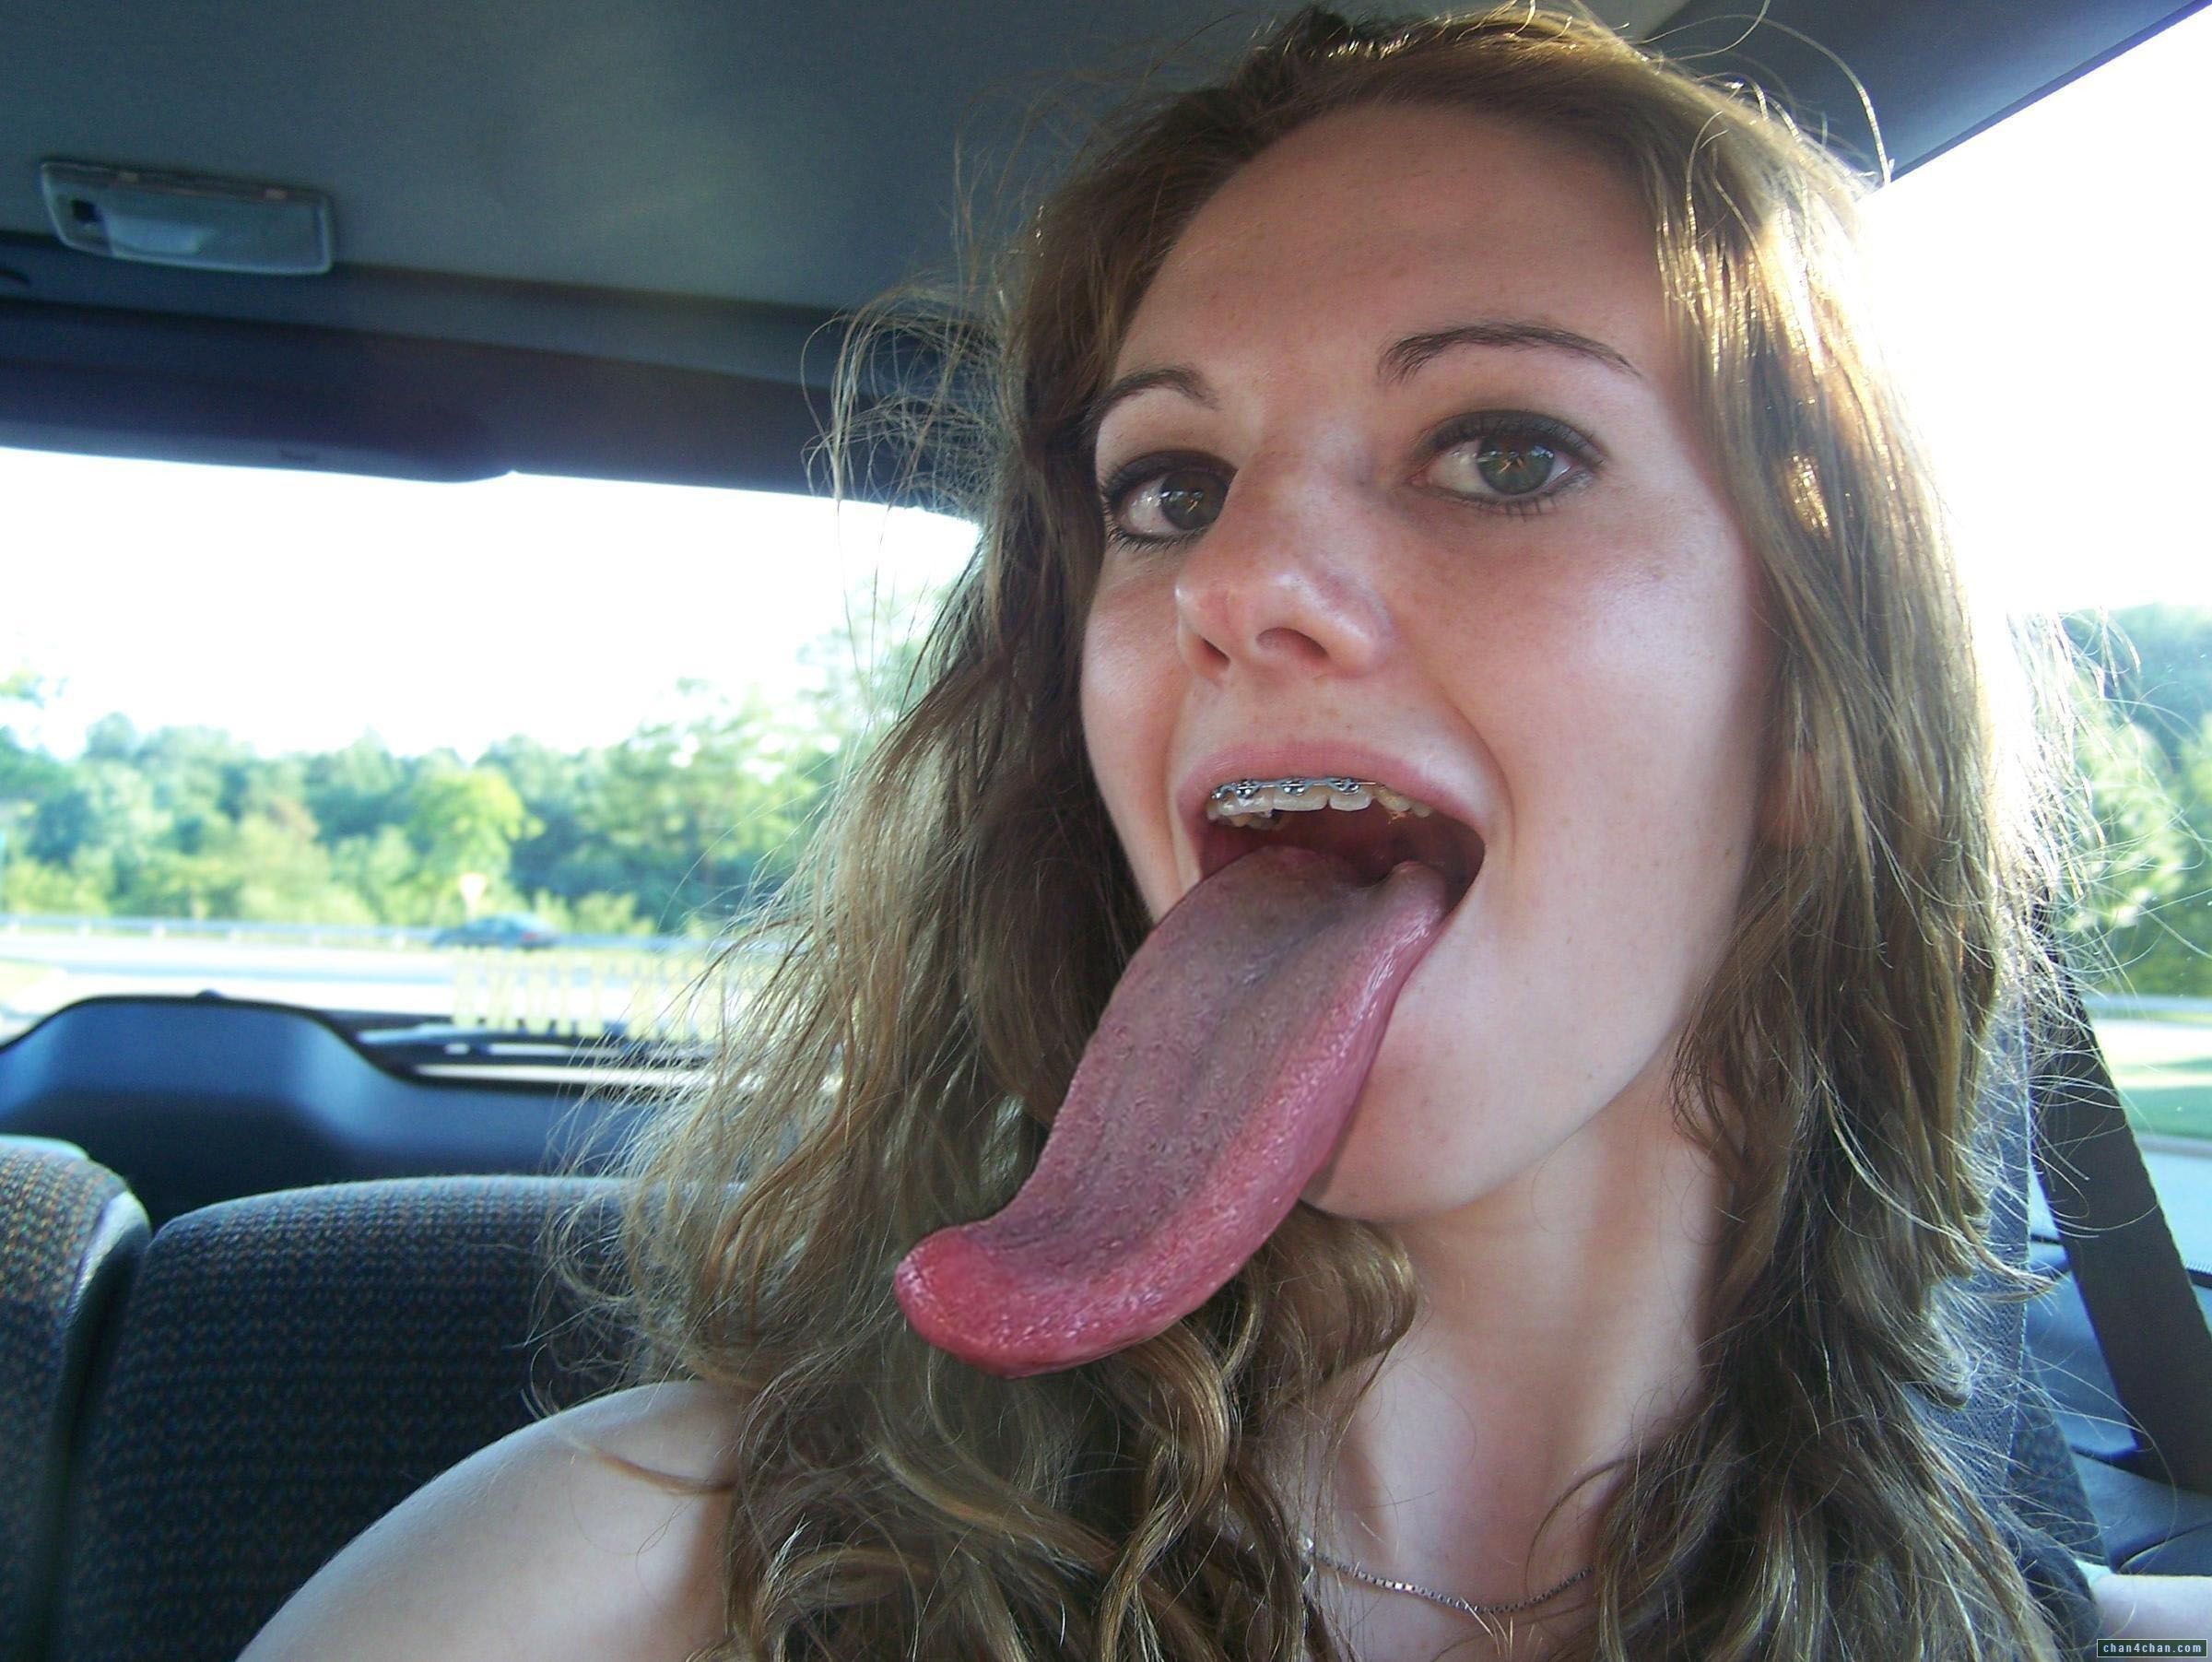 super long tongue hot girl porngif pics